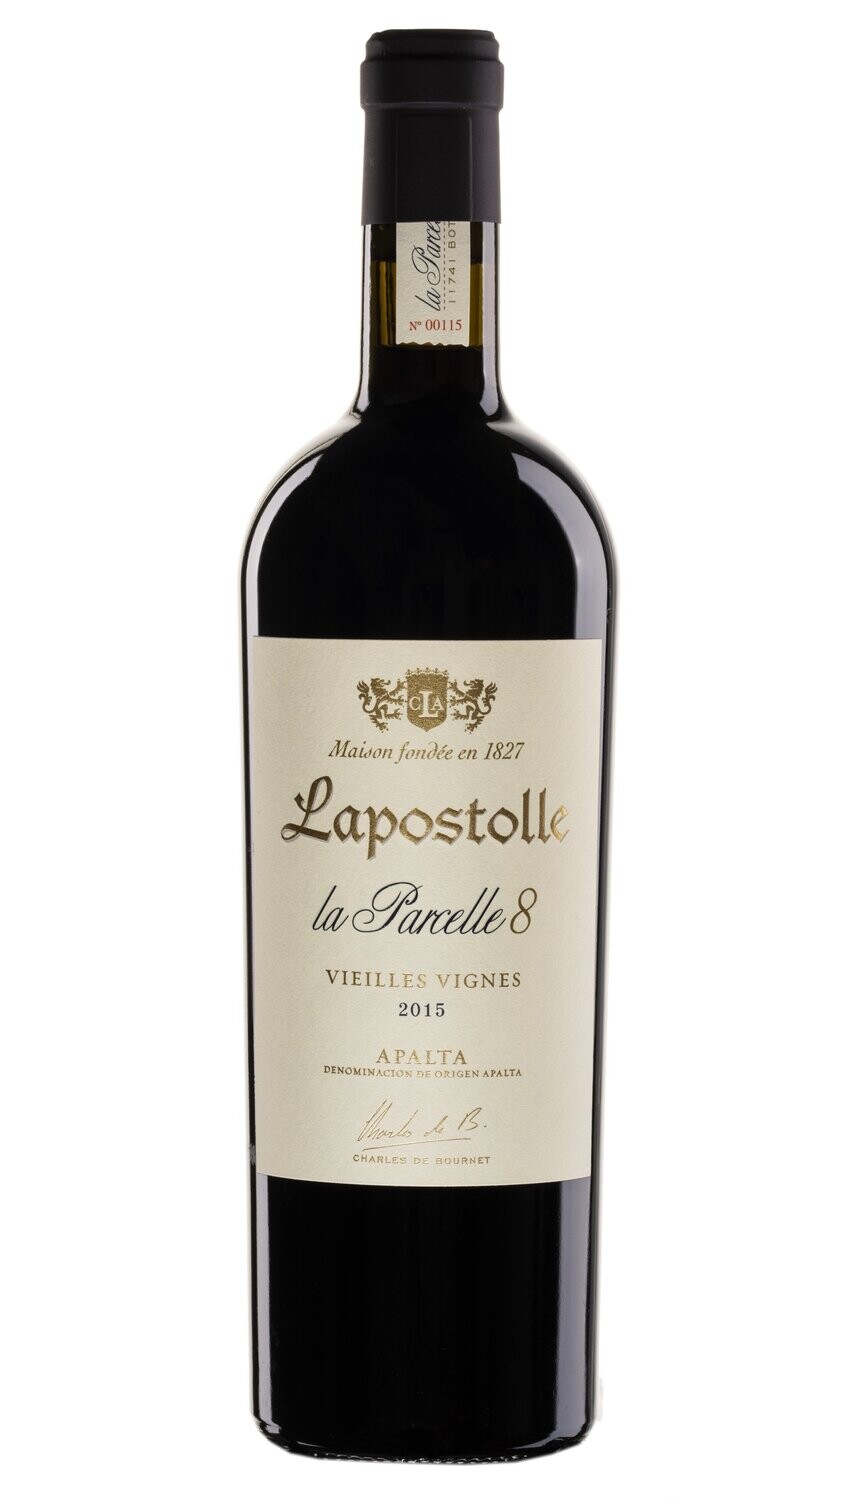 Lapostolle La Parcelle 8
Veilles Vignes
Apalta DO
2018 (99 points JS)